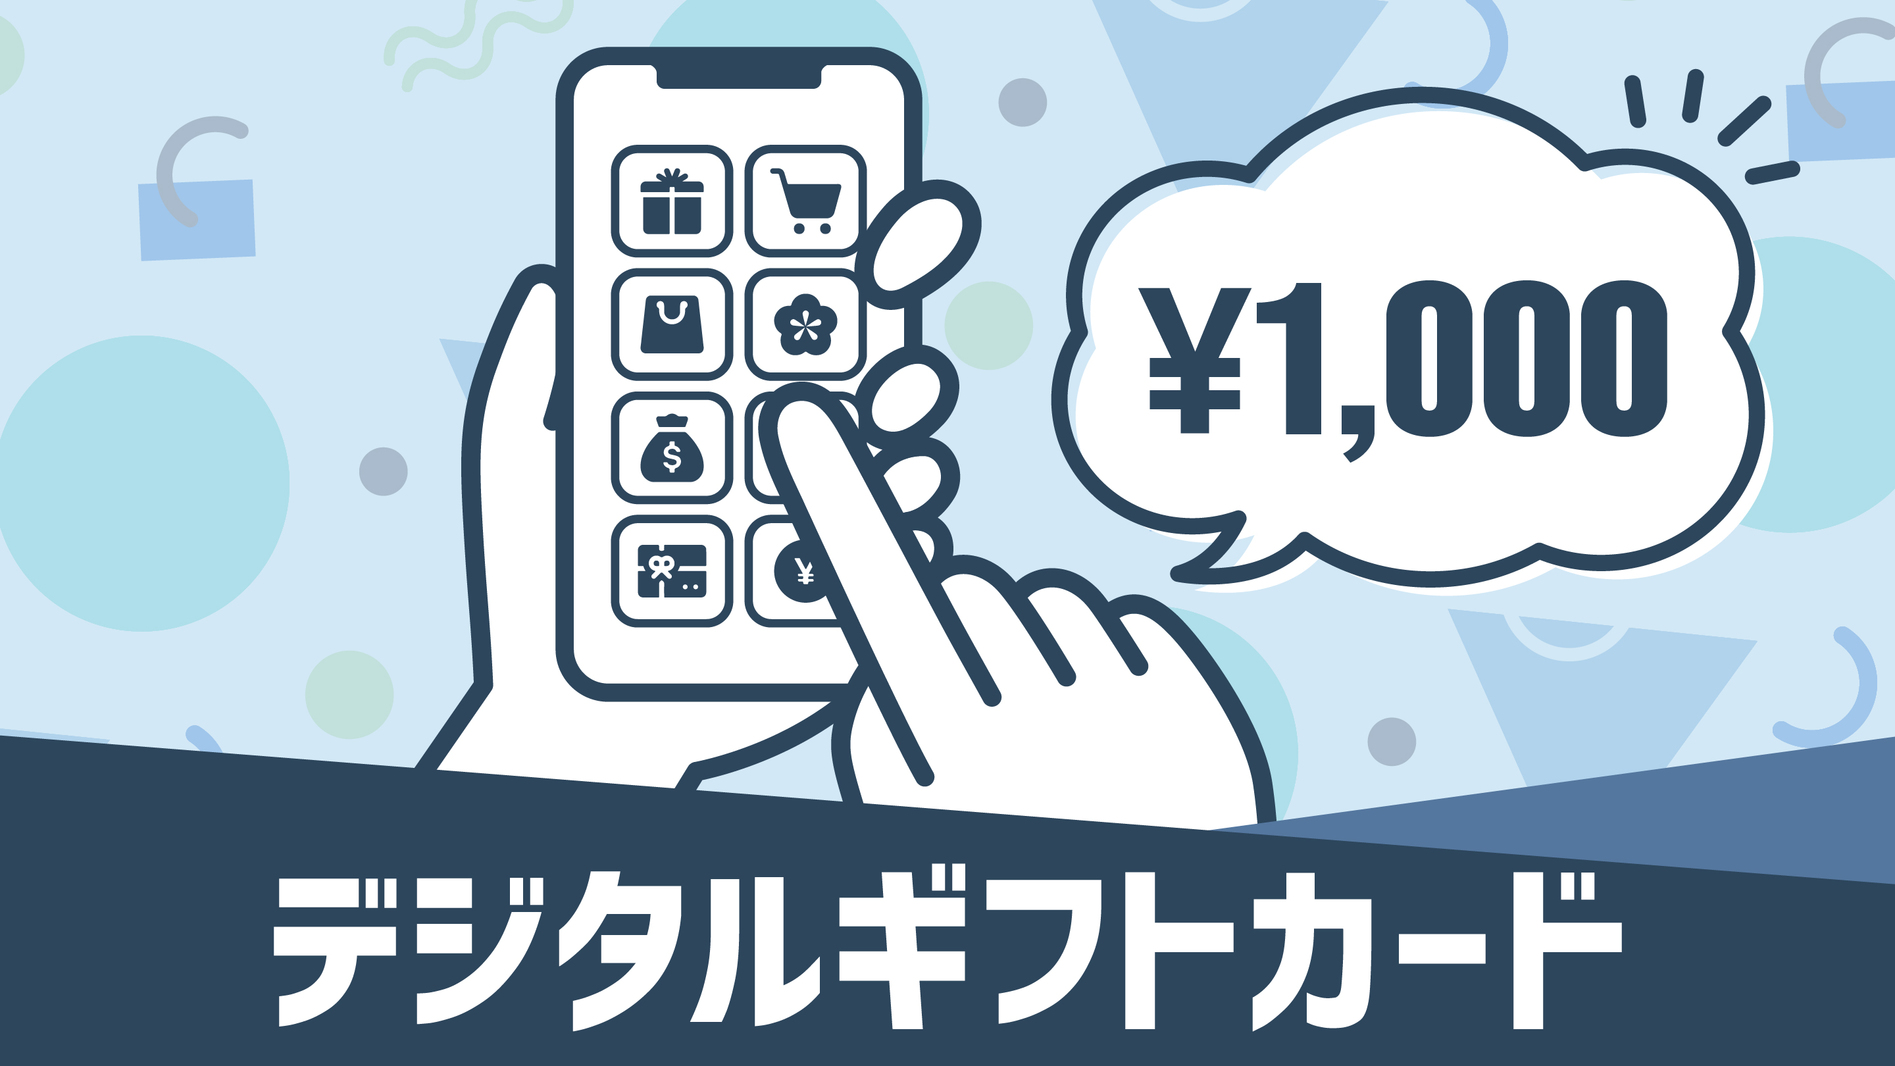 マルチギフトカード1000円付プラン【バイキング朝食付き】